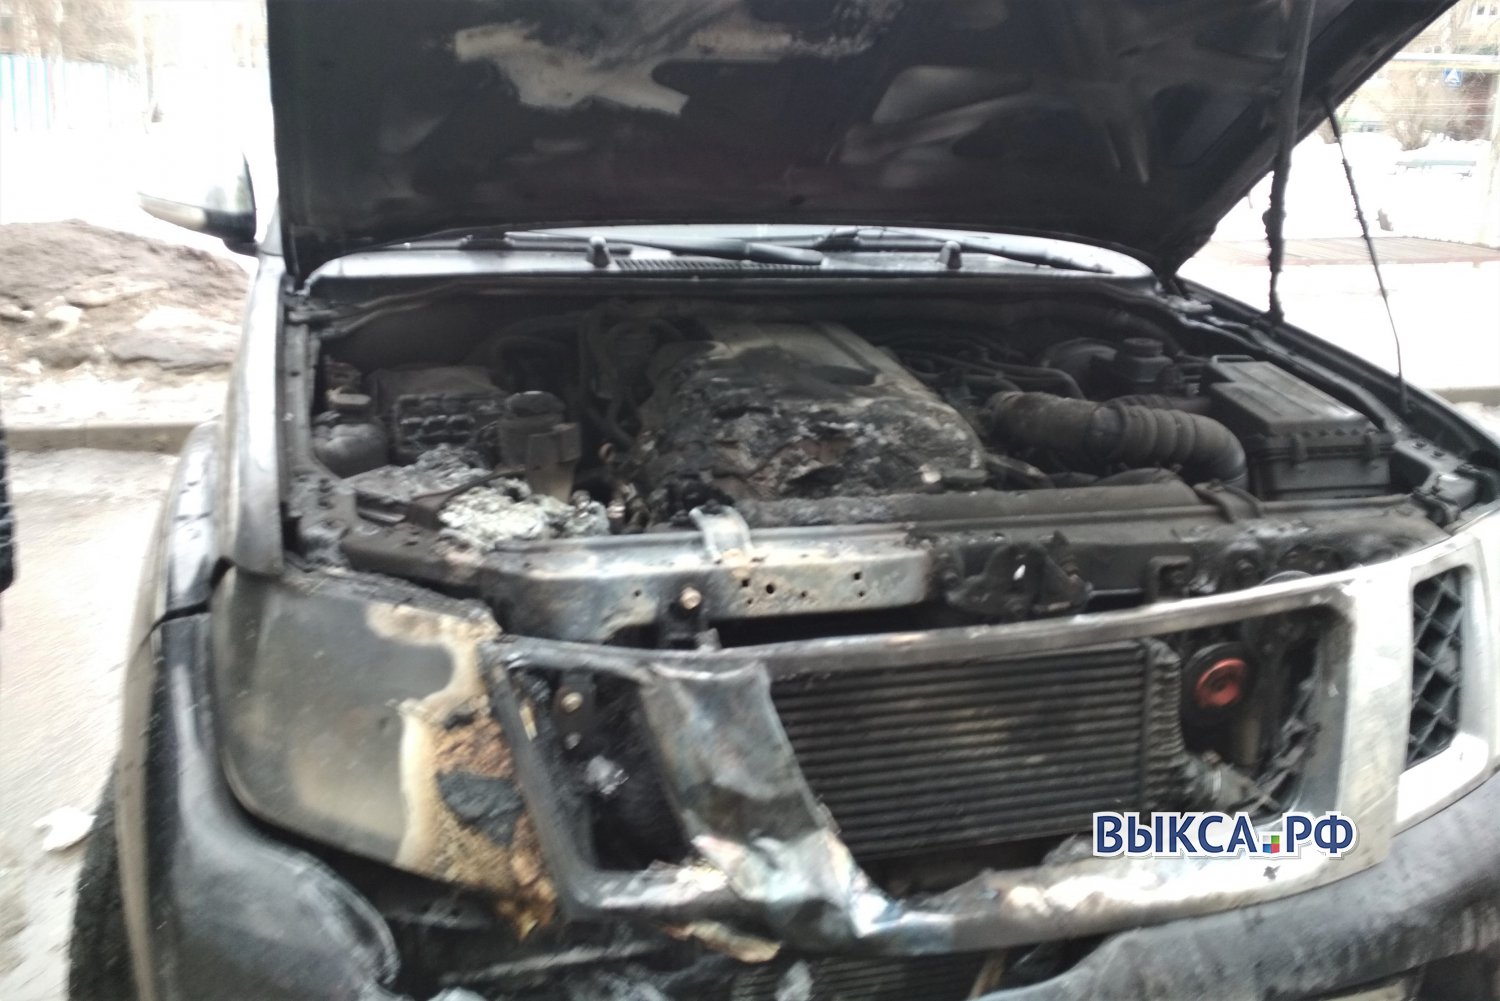 Очевидцы потушили горевший автомобиль в Юбилейном